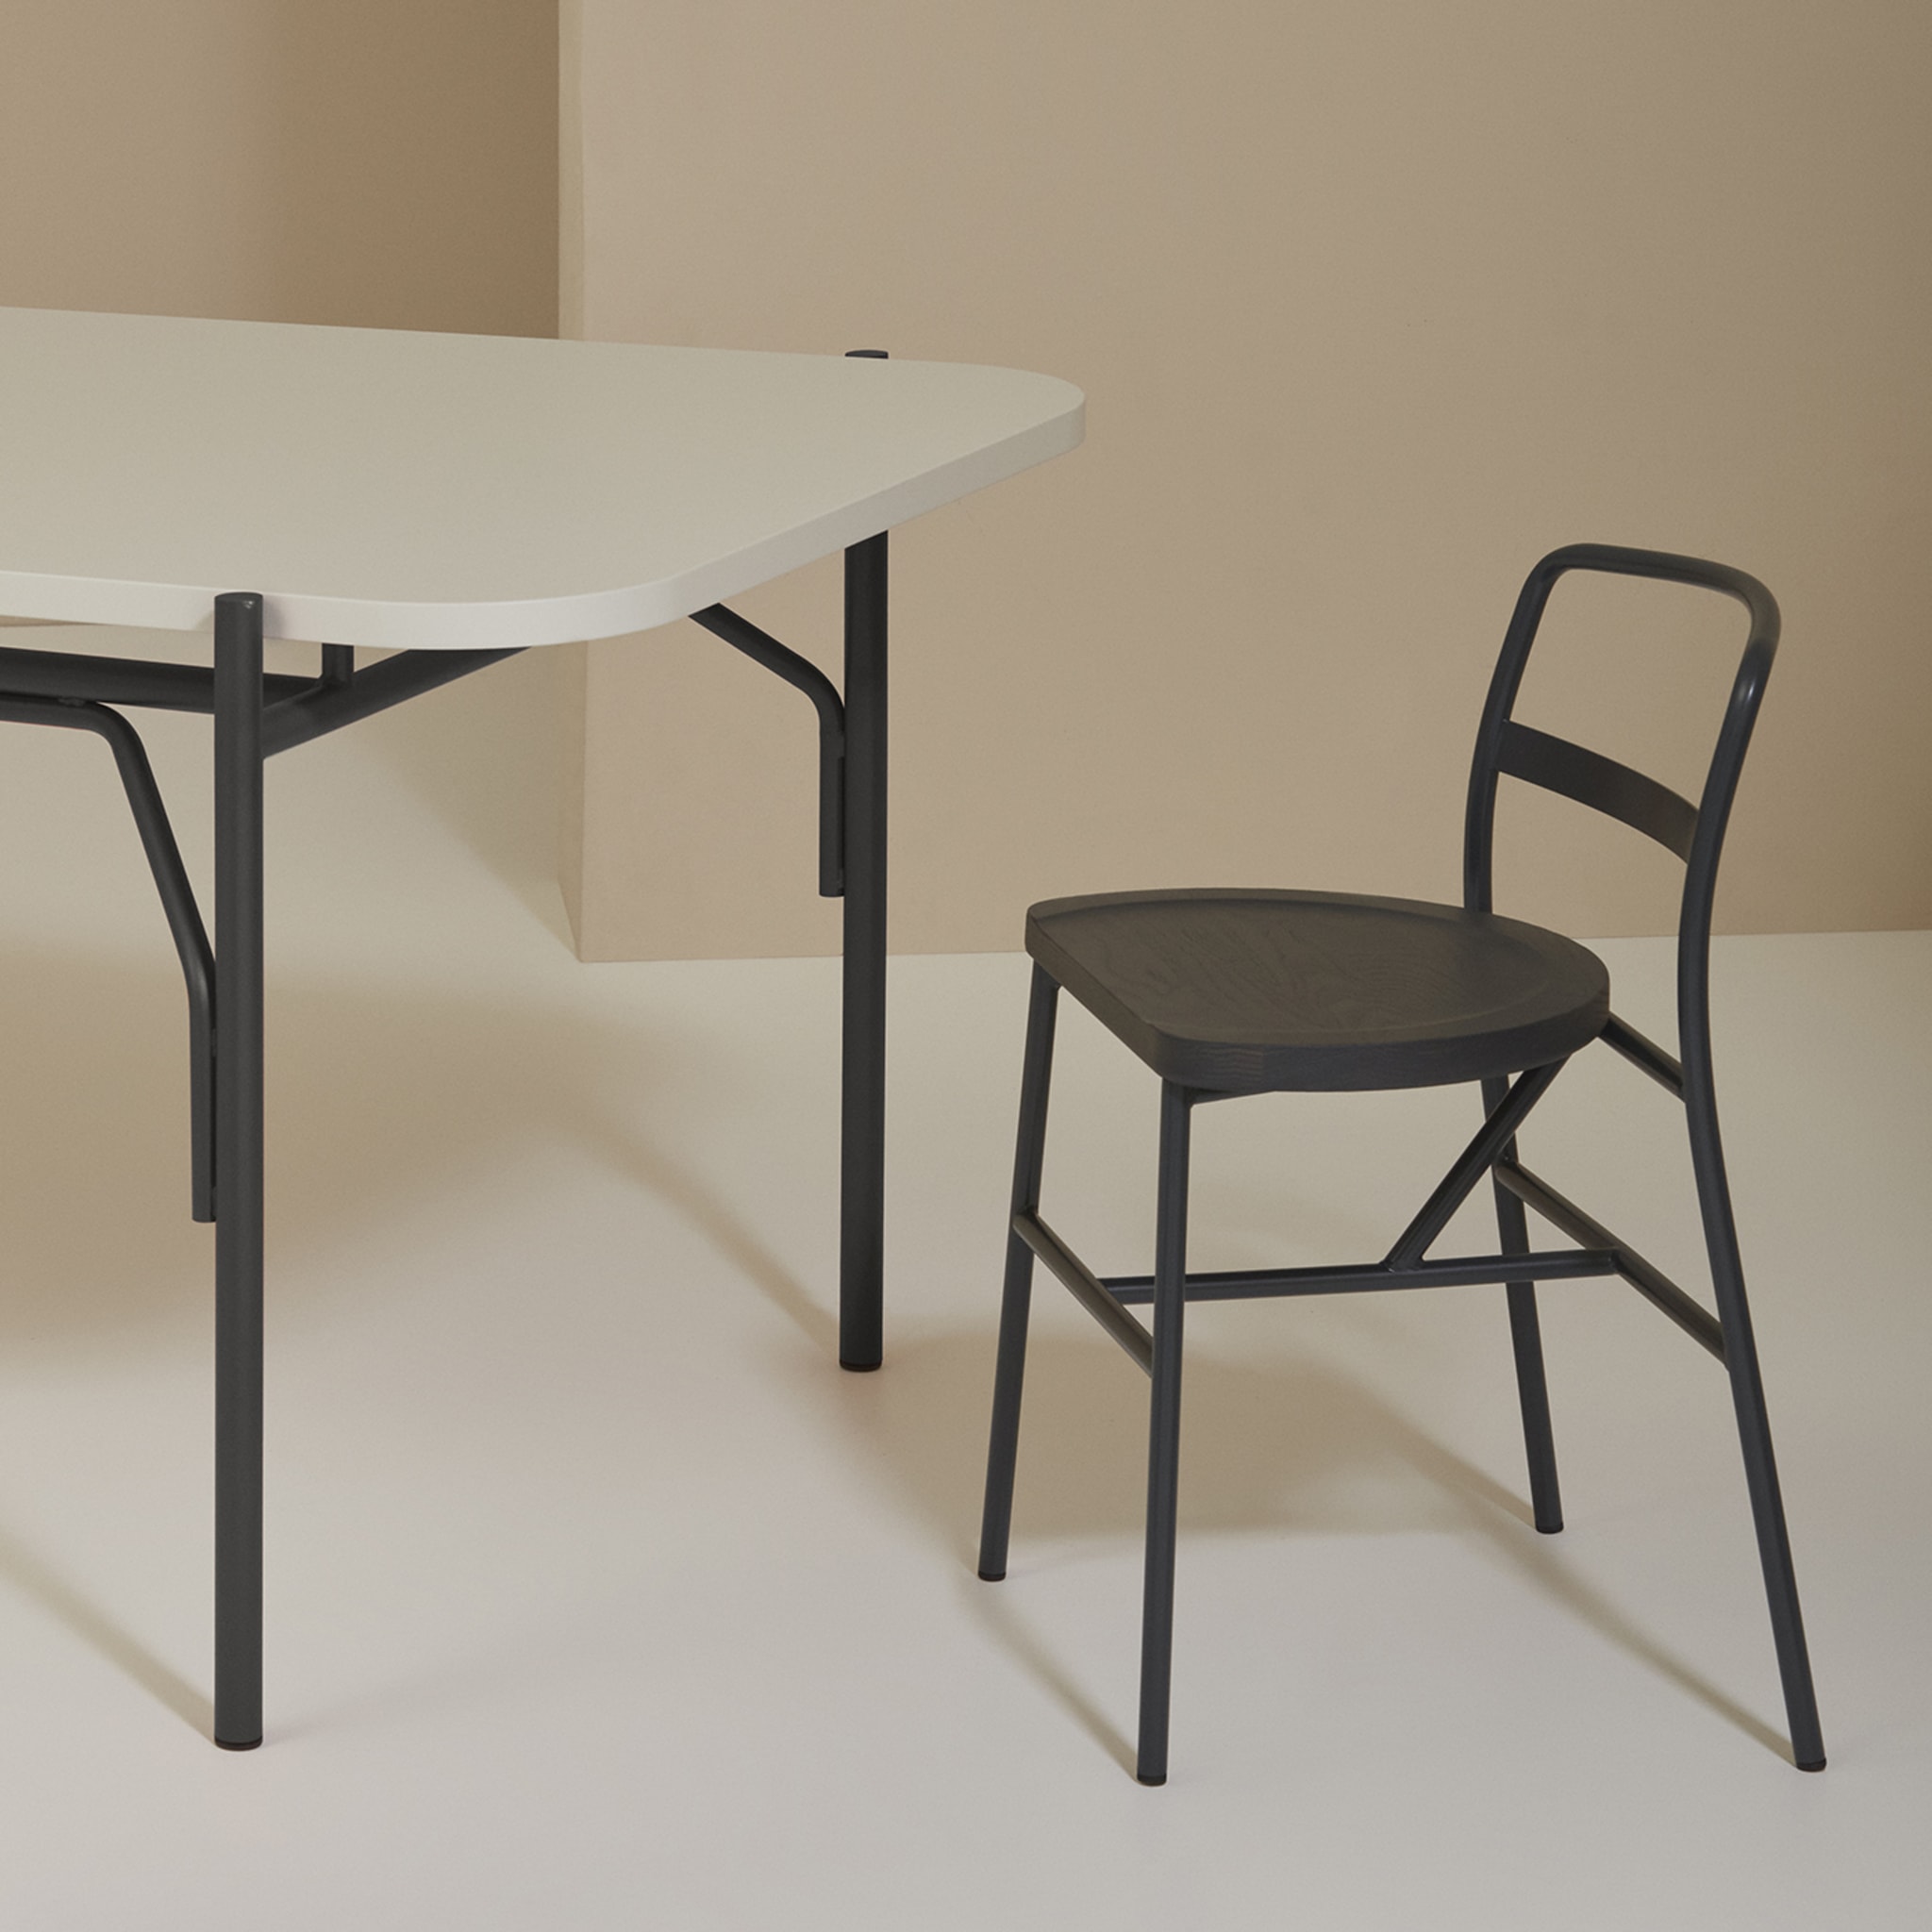 Puccio 726 Anthracite-Gray Chair by Emilio Nanni - Alternative view 2